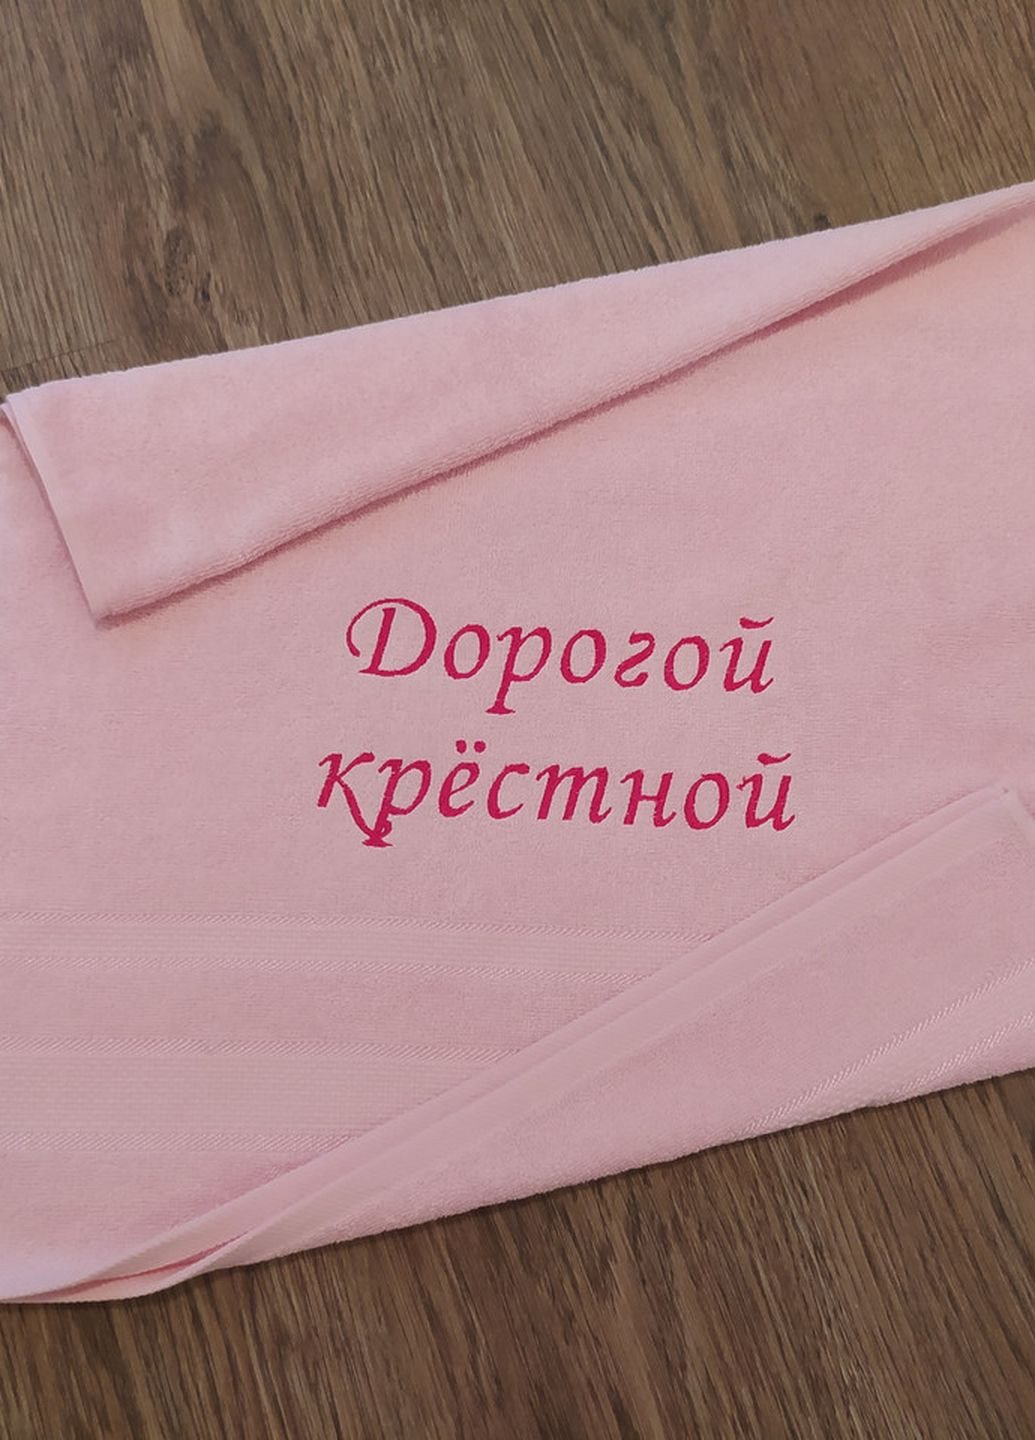 No Brand полотенце с вышивкой махровое лицевое 50*90 розовый крестной маме куме 00097 однотонный розовый производство - Украина